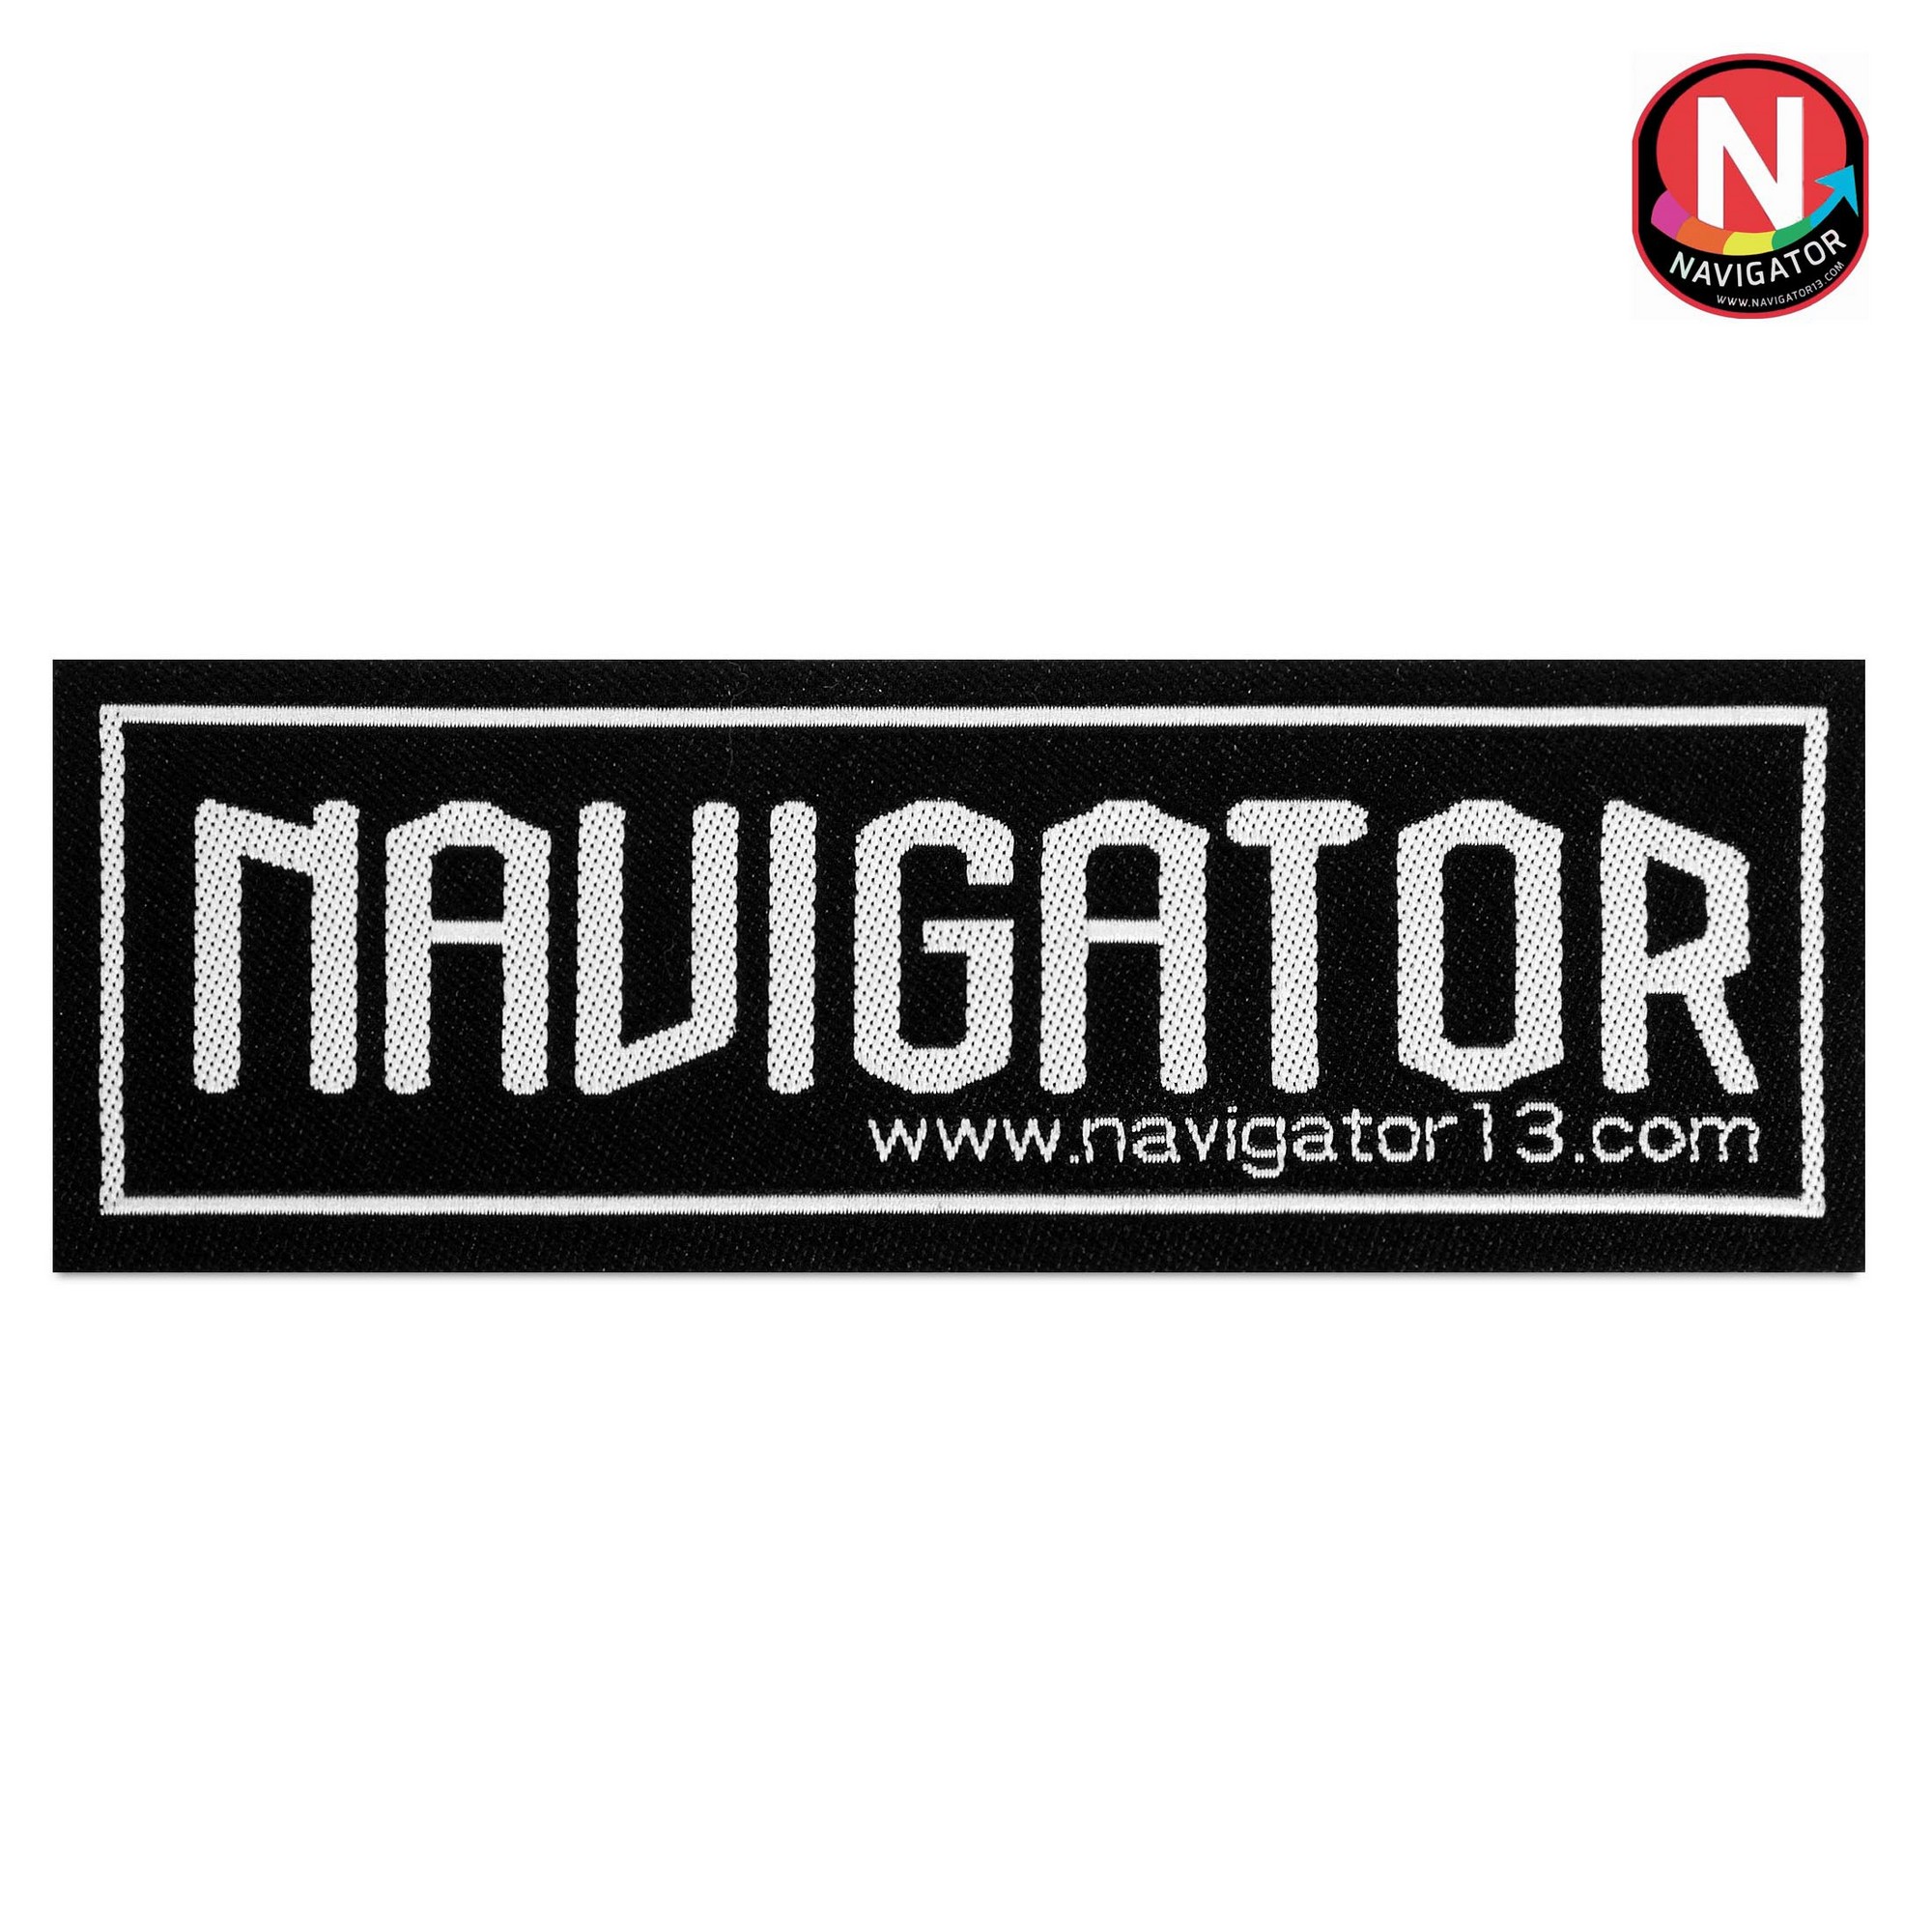 Нашивка Navigator Pro 96х35мм самоклеющаяся черная 2000_2000